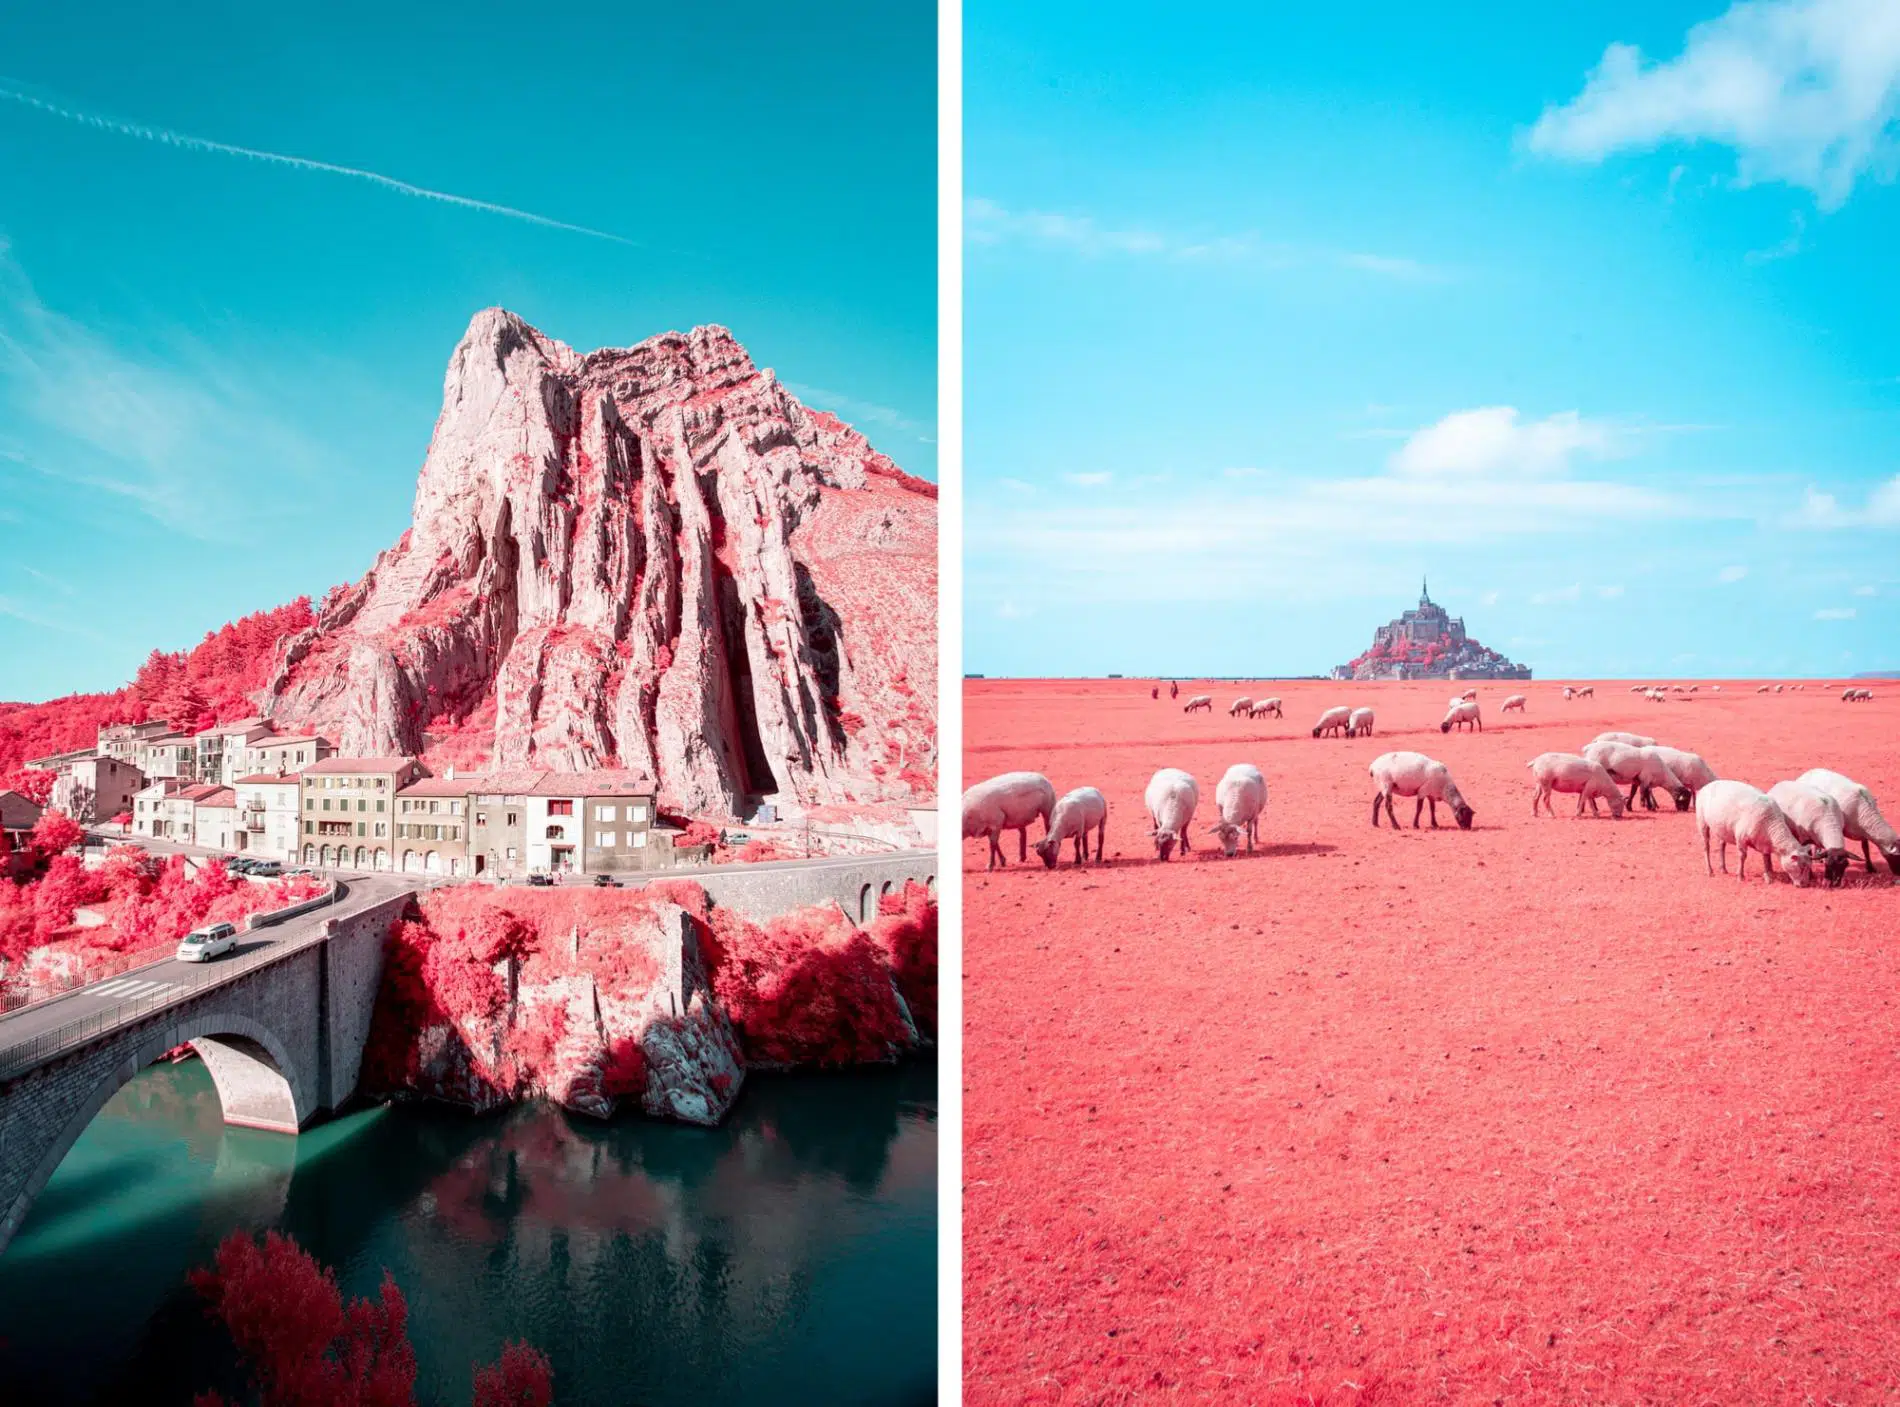 fotografia infrajoga de Paolo Pettigiani ciudad en rocas y ovejas